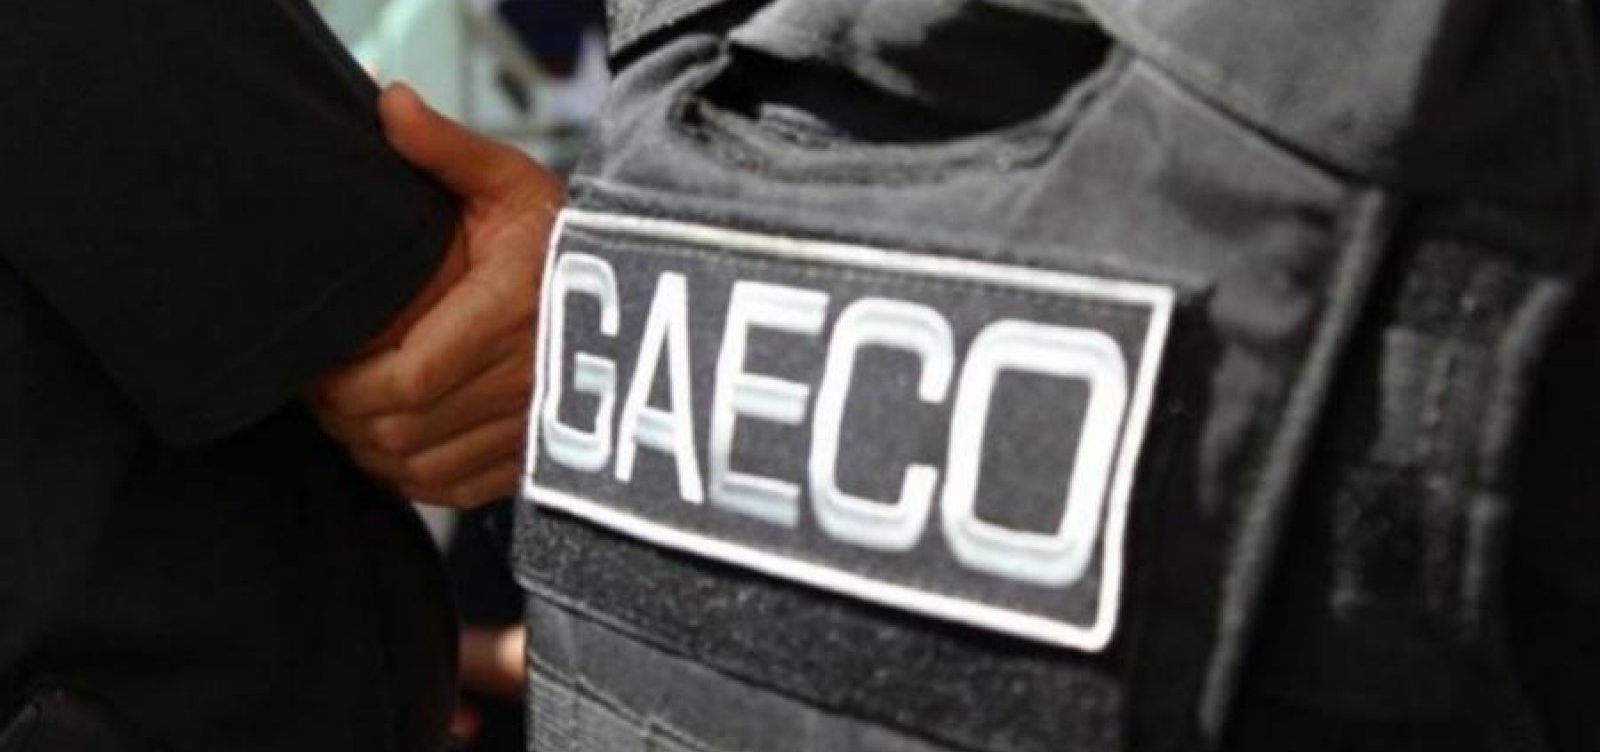 Mulher foragida por tráfico de drogas e organização criminosa é presa em Salvador